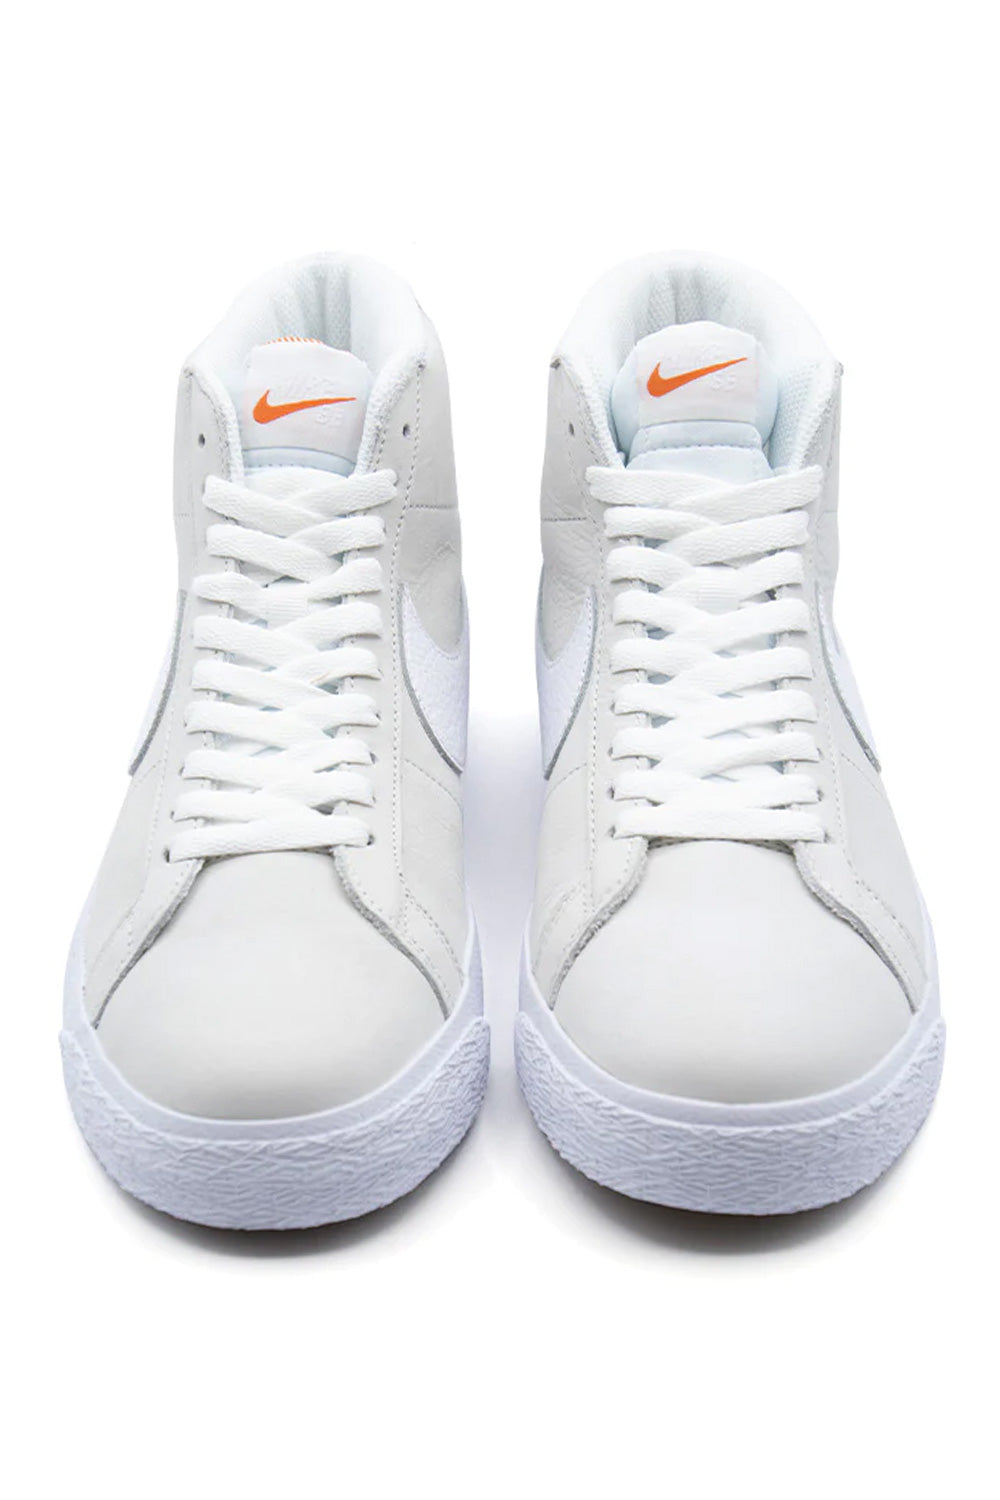 Nike SB Zoom Blazer Mid ISO Shoe (Orange Label) White / White / White / Summit White - BONKERS